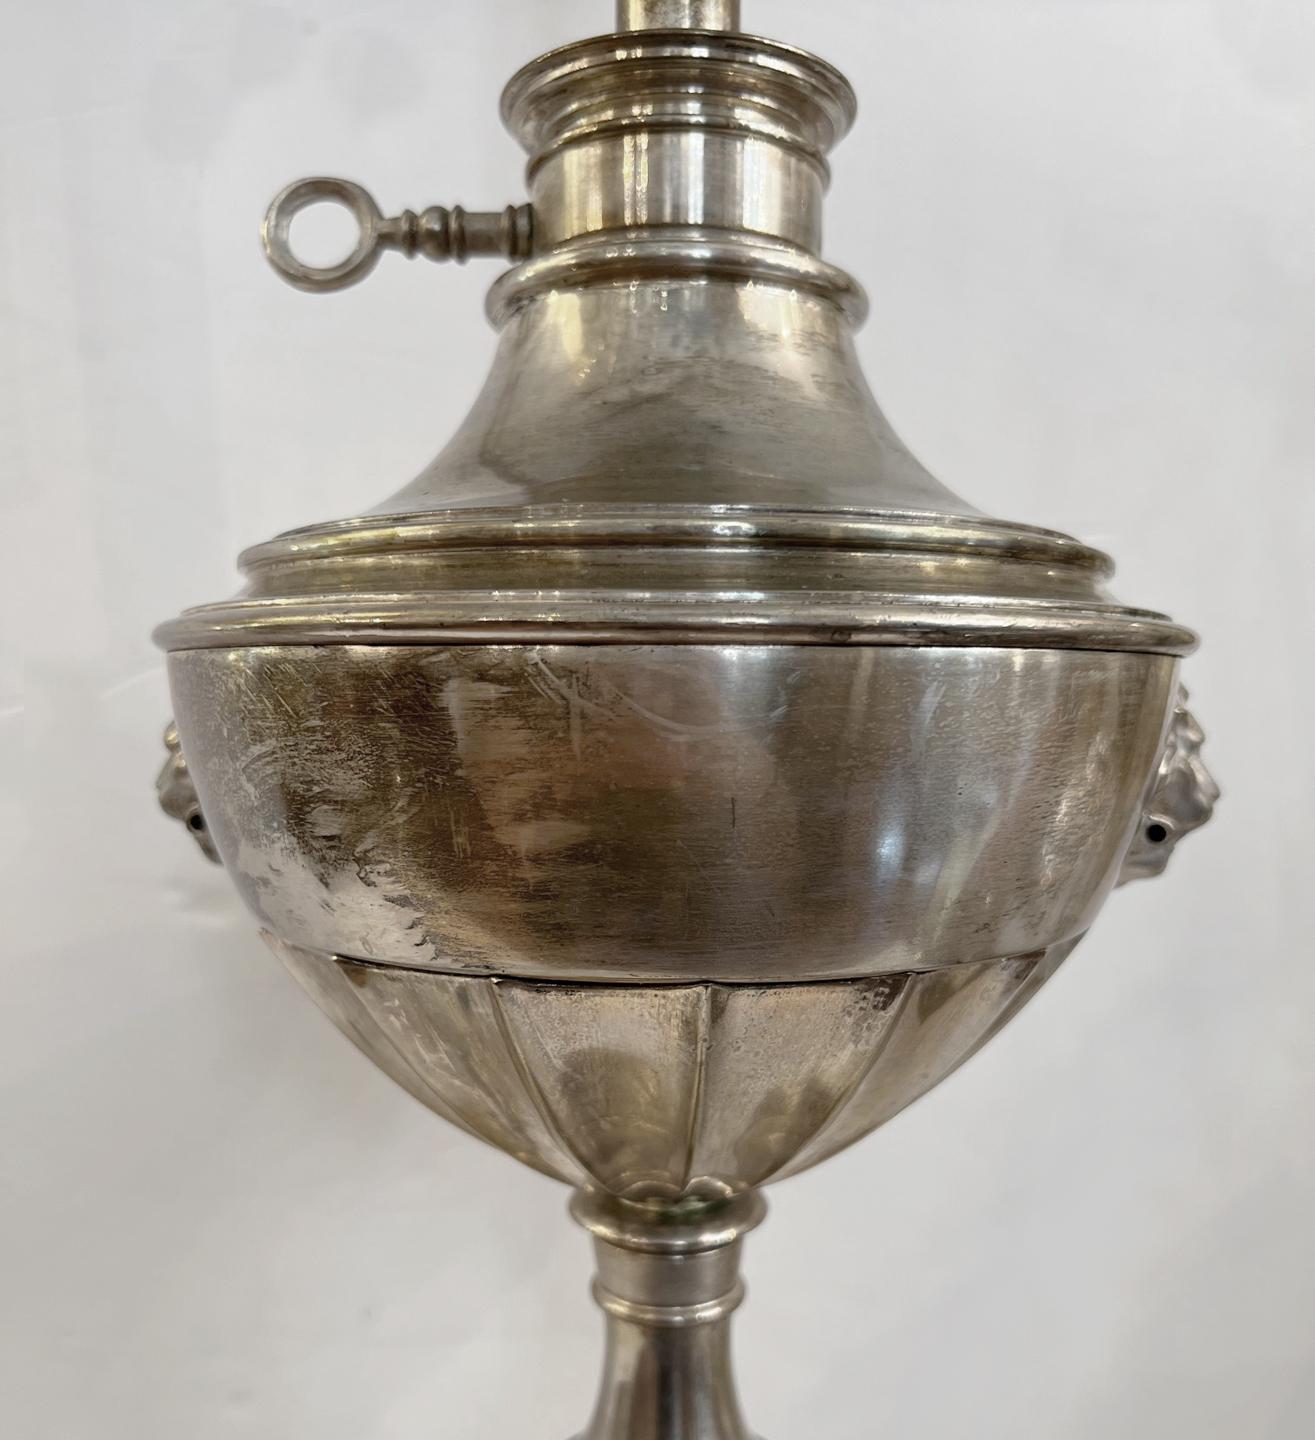 Une seule lampe de table anglaise en métal argenté datant des années 1920 avec des masques de lion sur le corps.

Mesures :
Hauteur du corps : 22
Hauteur du reste de l'abat-jour : 33